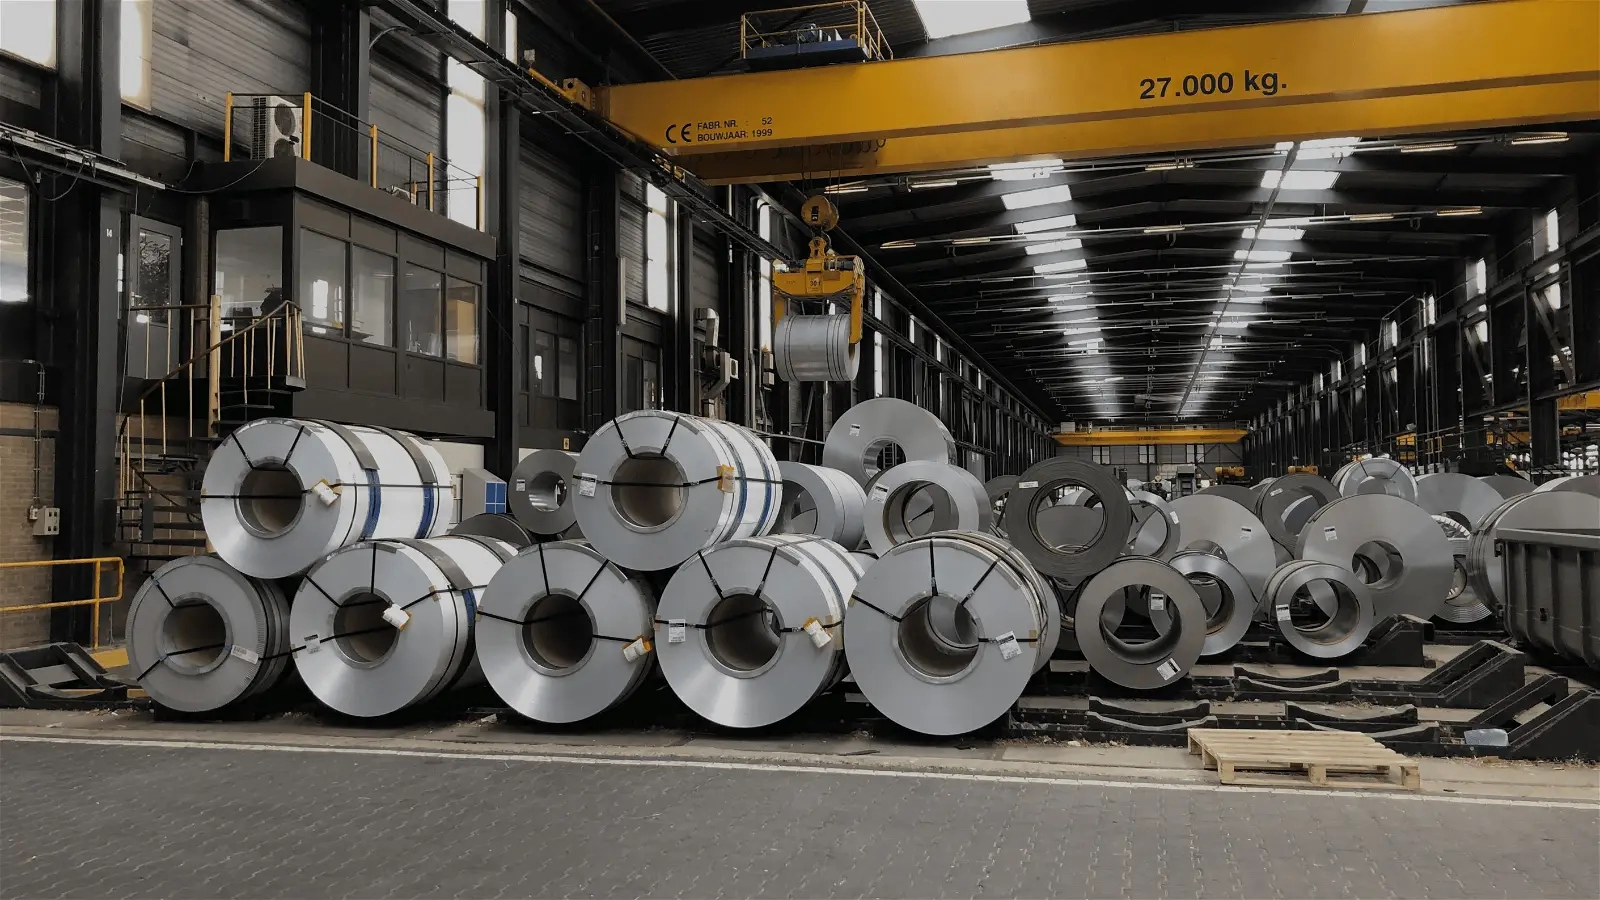 توفر شركات صناعة الحديد والصلب في تركيا بنية تحتية آمنة وموثوقة للبلاد